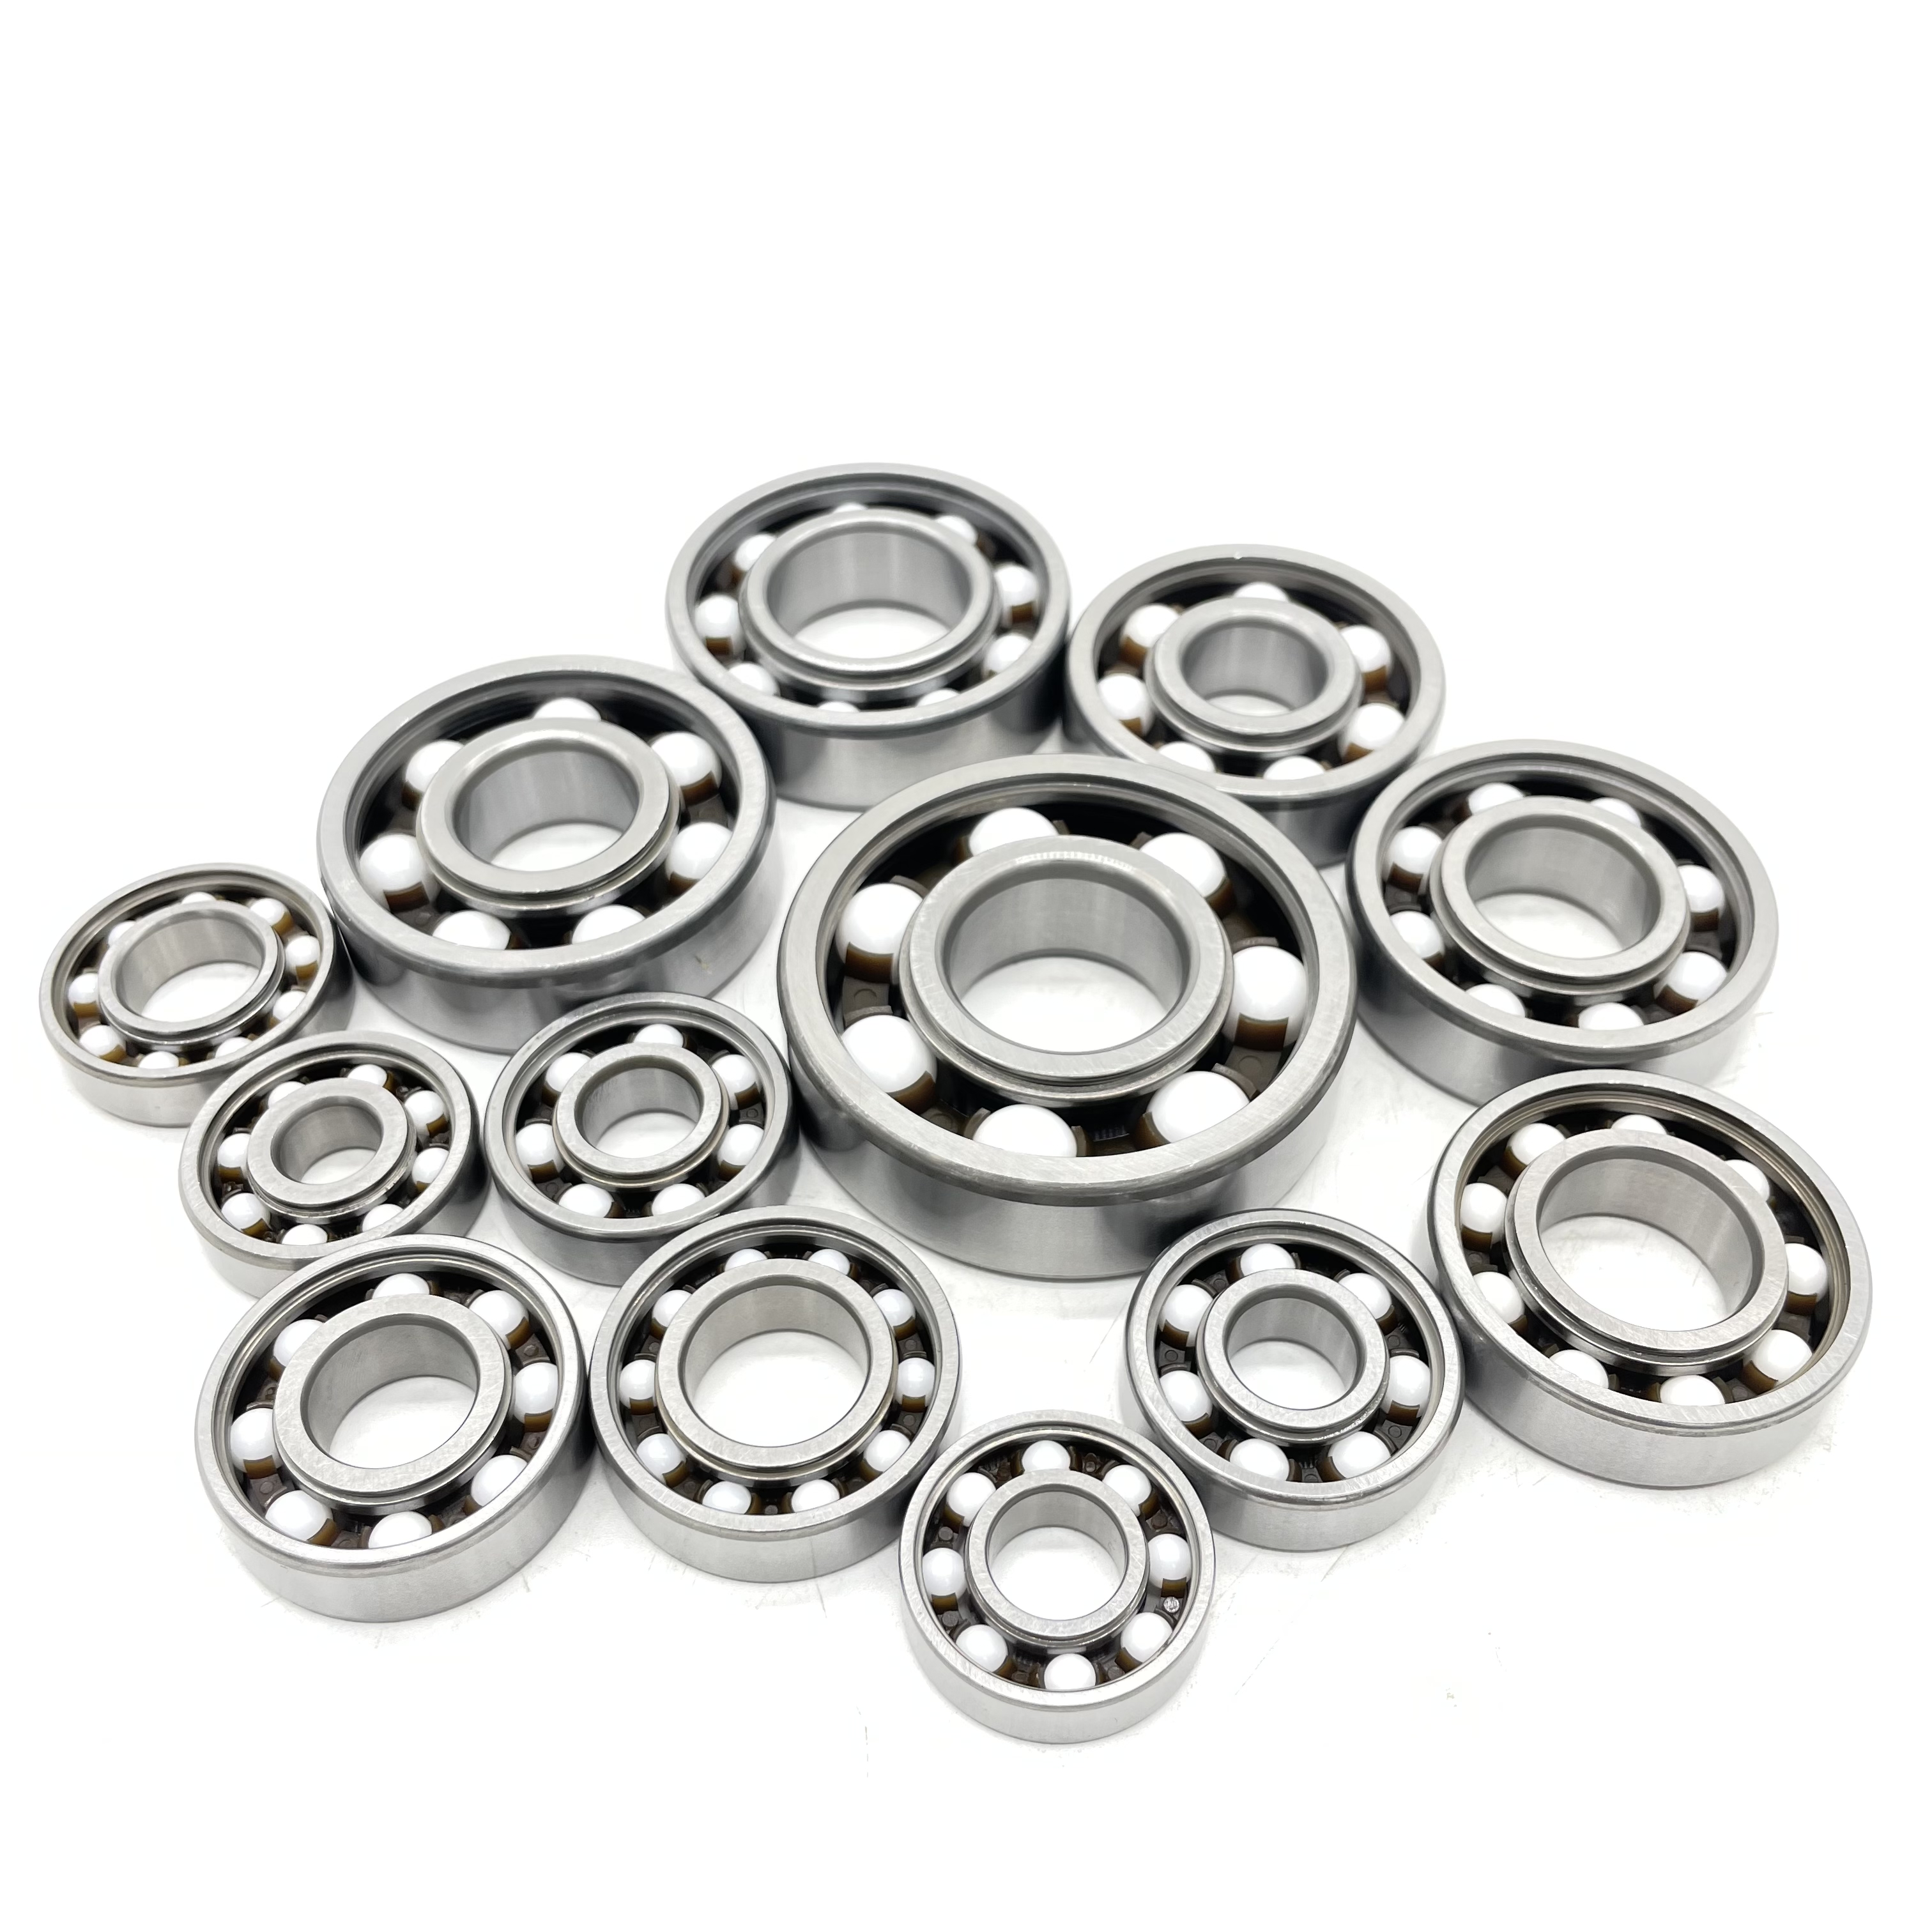 Bearing tips | ceramic ball bearing